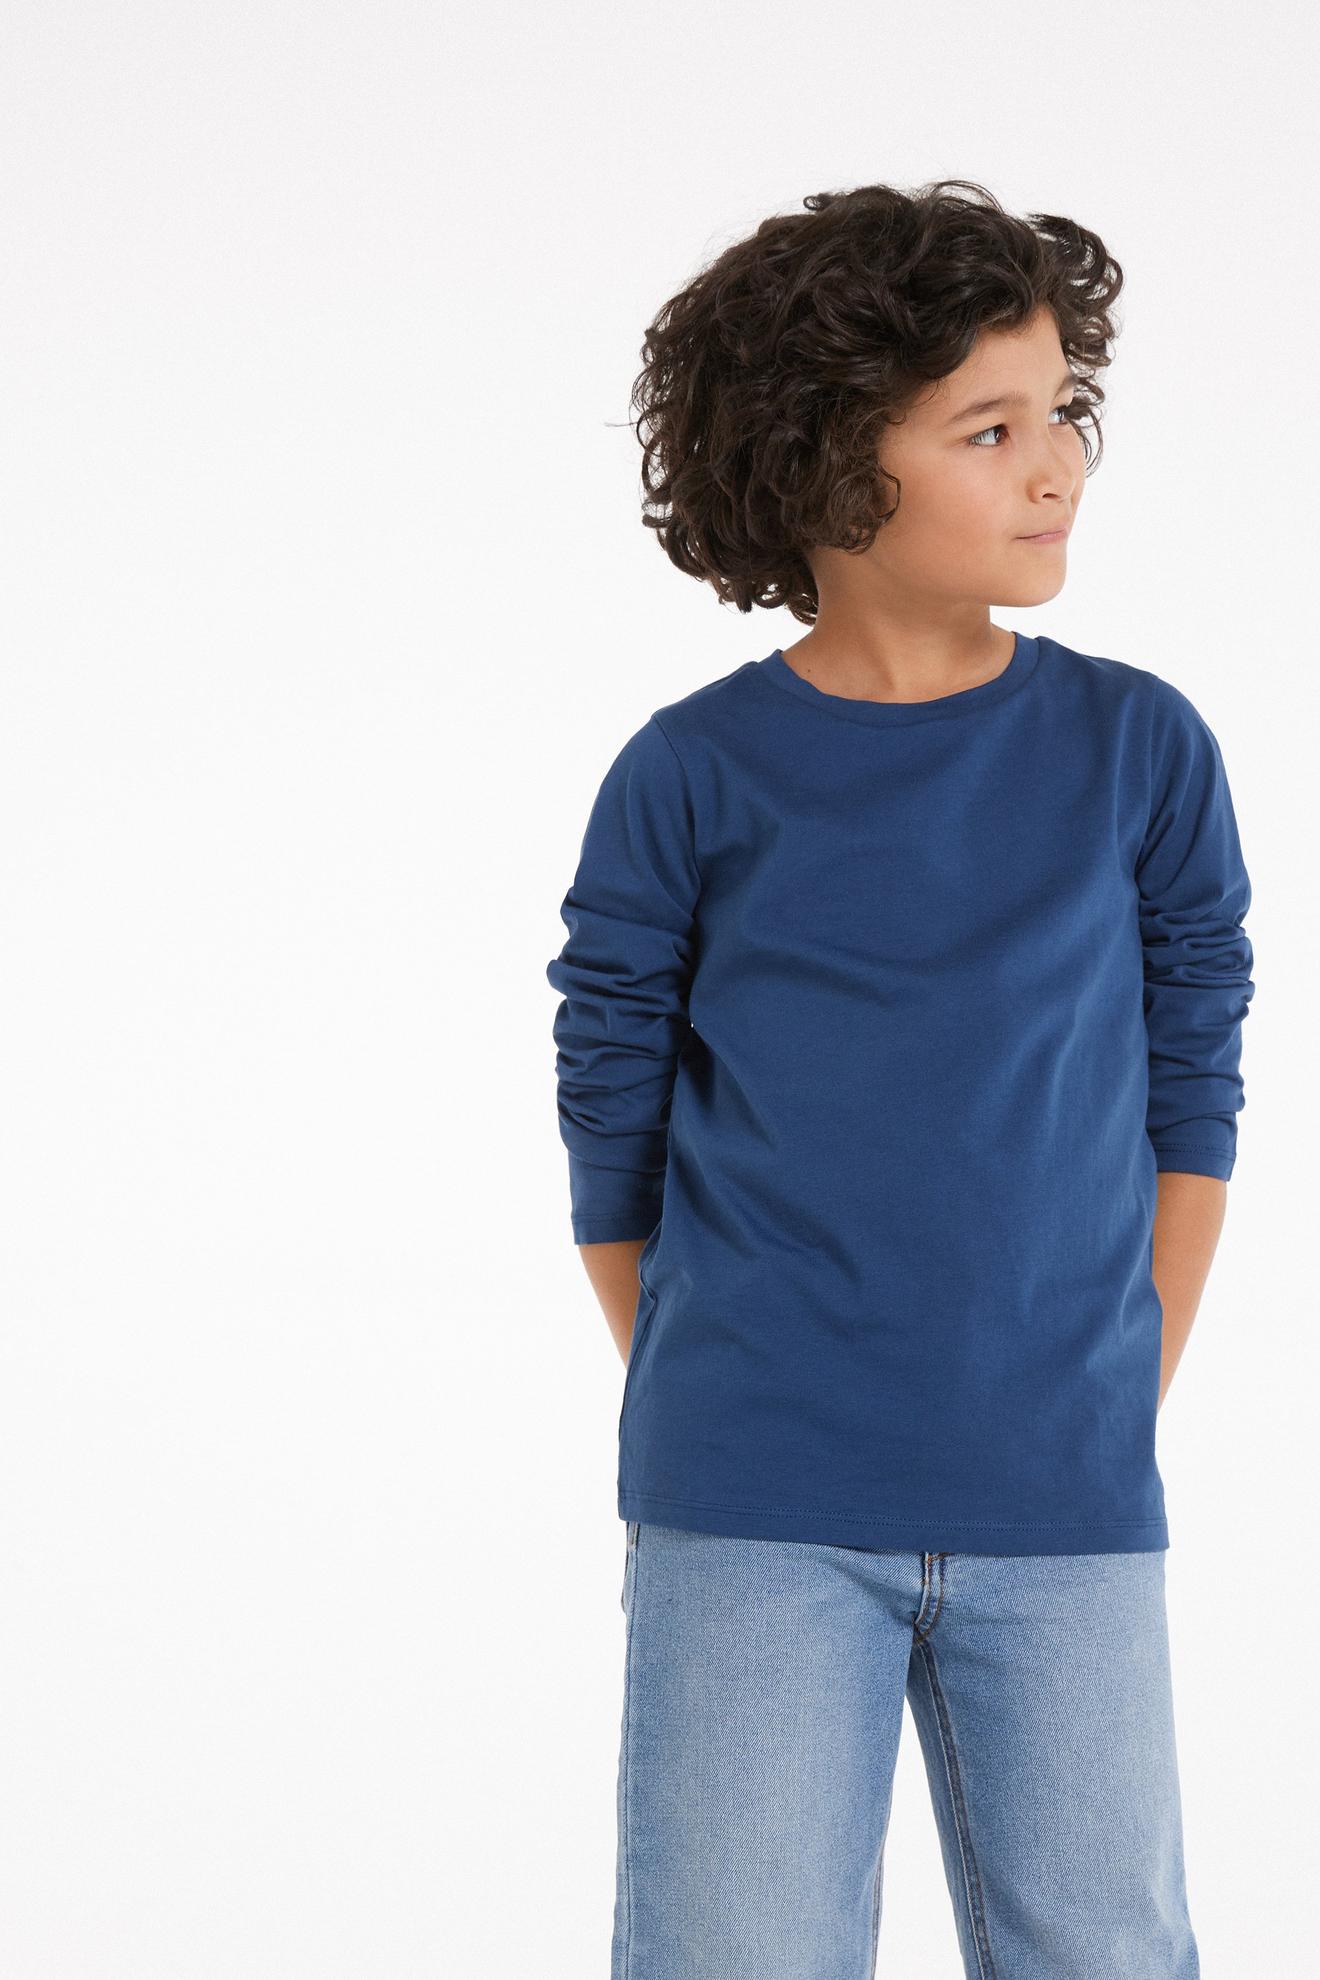 Langärmeliges Basic-Shirt aus Baumwolle für Kinder Unisex für 5,99€ in Tezenis